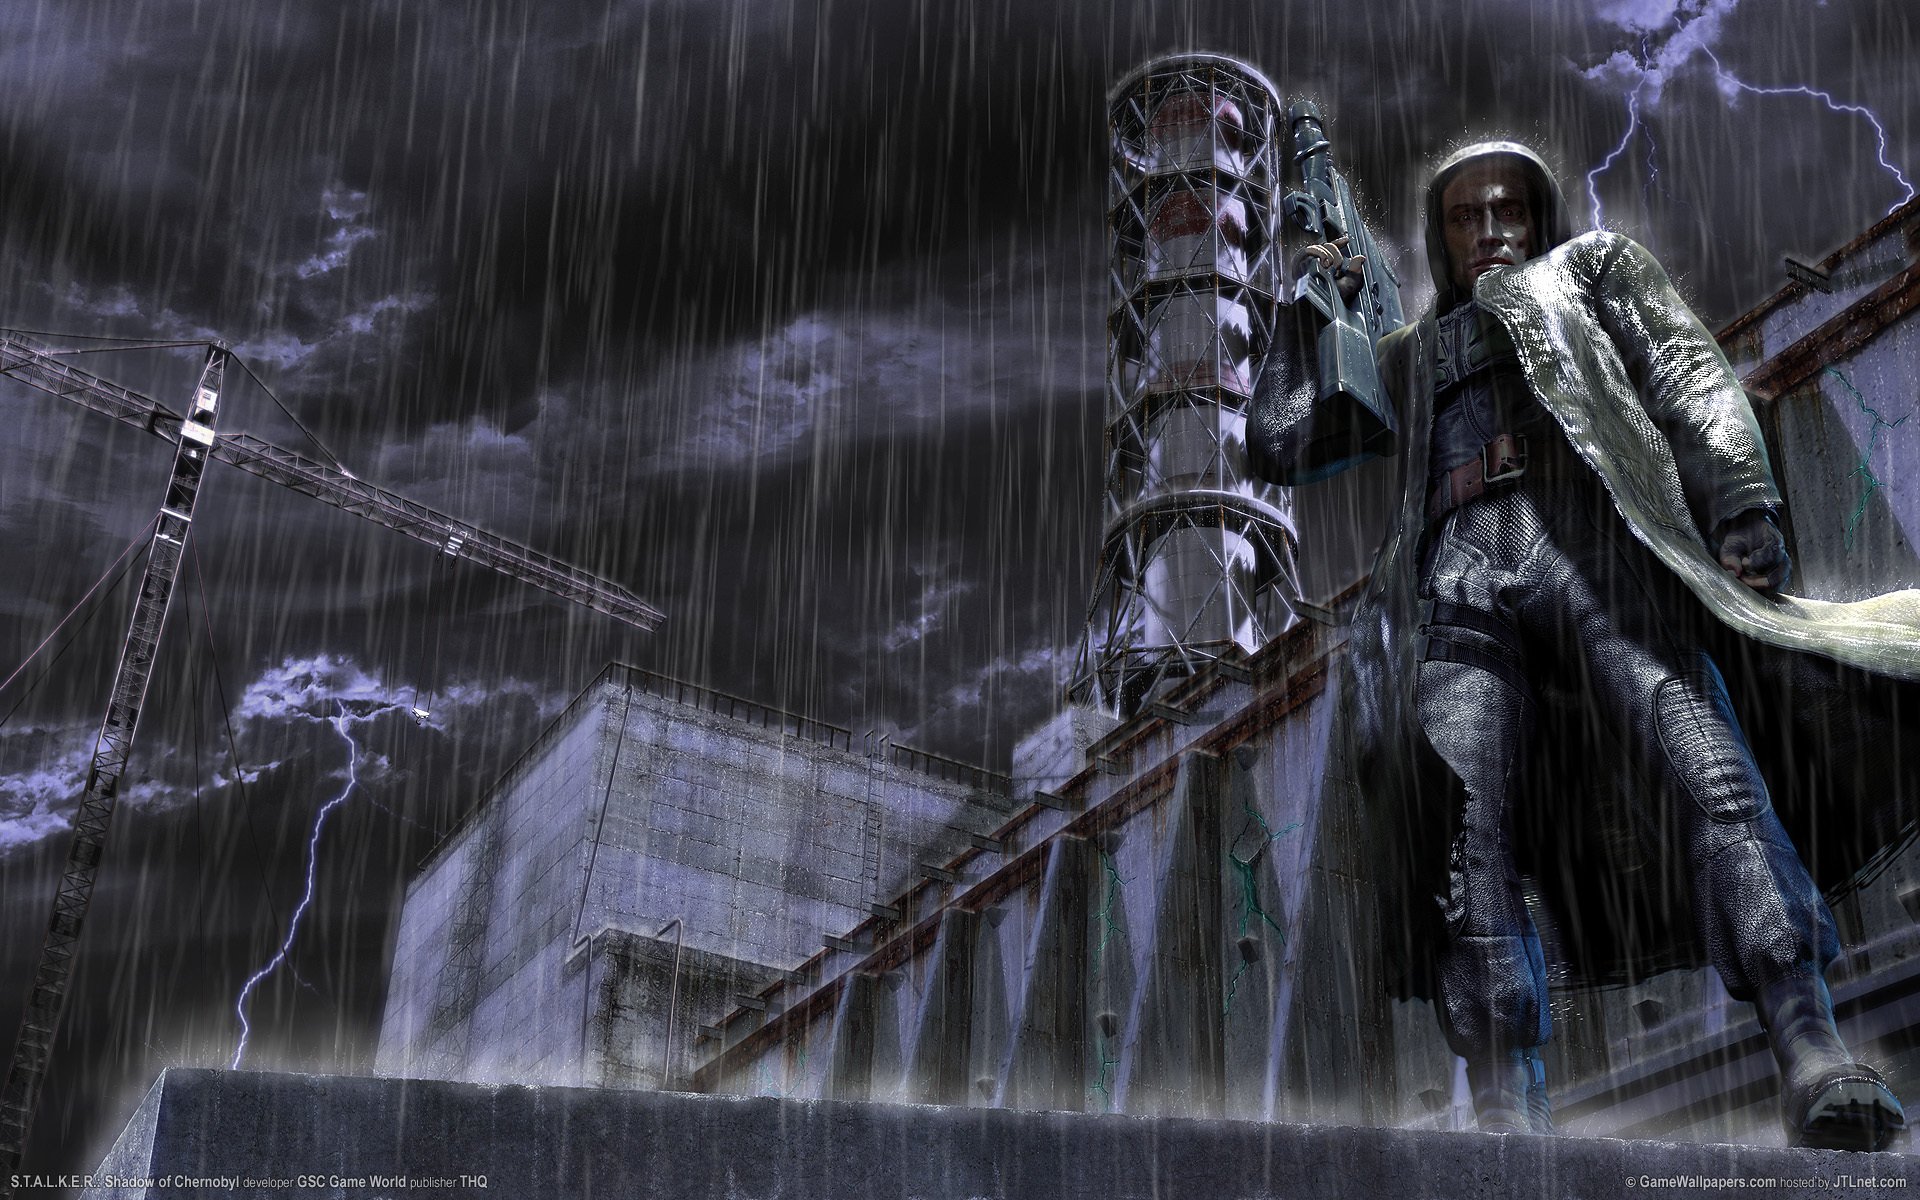 Аниме-рисунок мужчины-сталкера под дождем